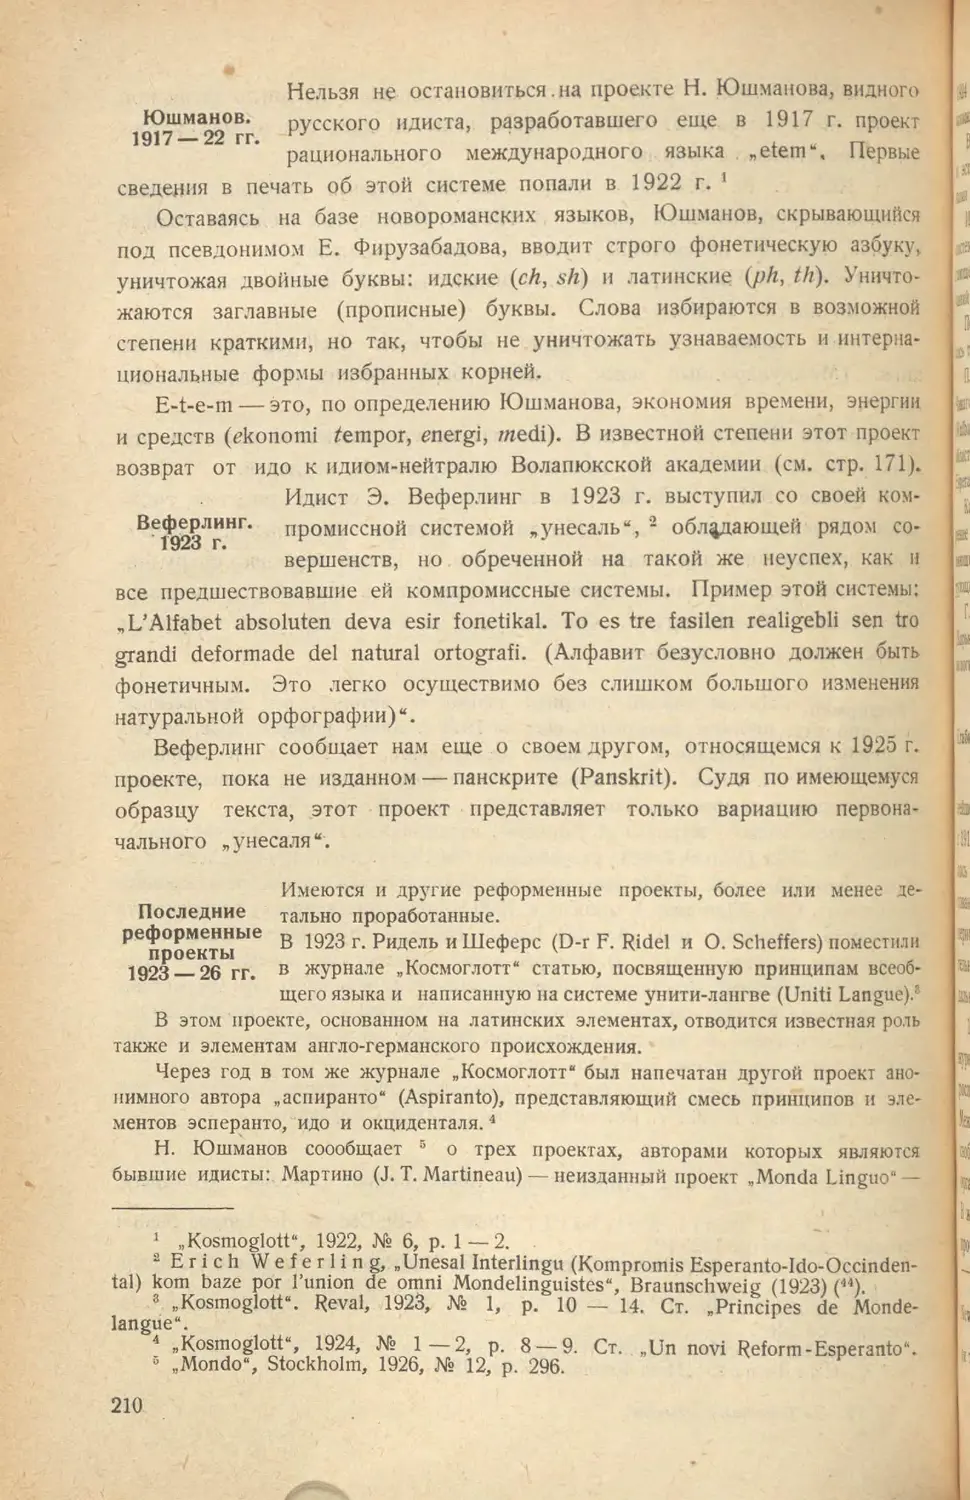 Юшманов. 1917-22
Веферлинг. 1923
Последние реформенные проекты 1923-26